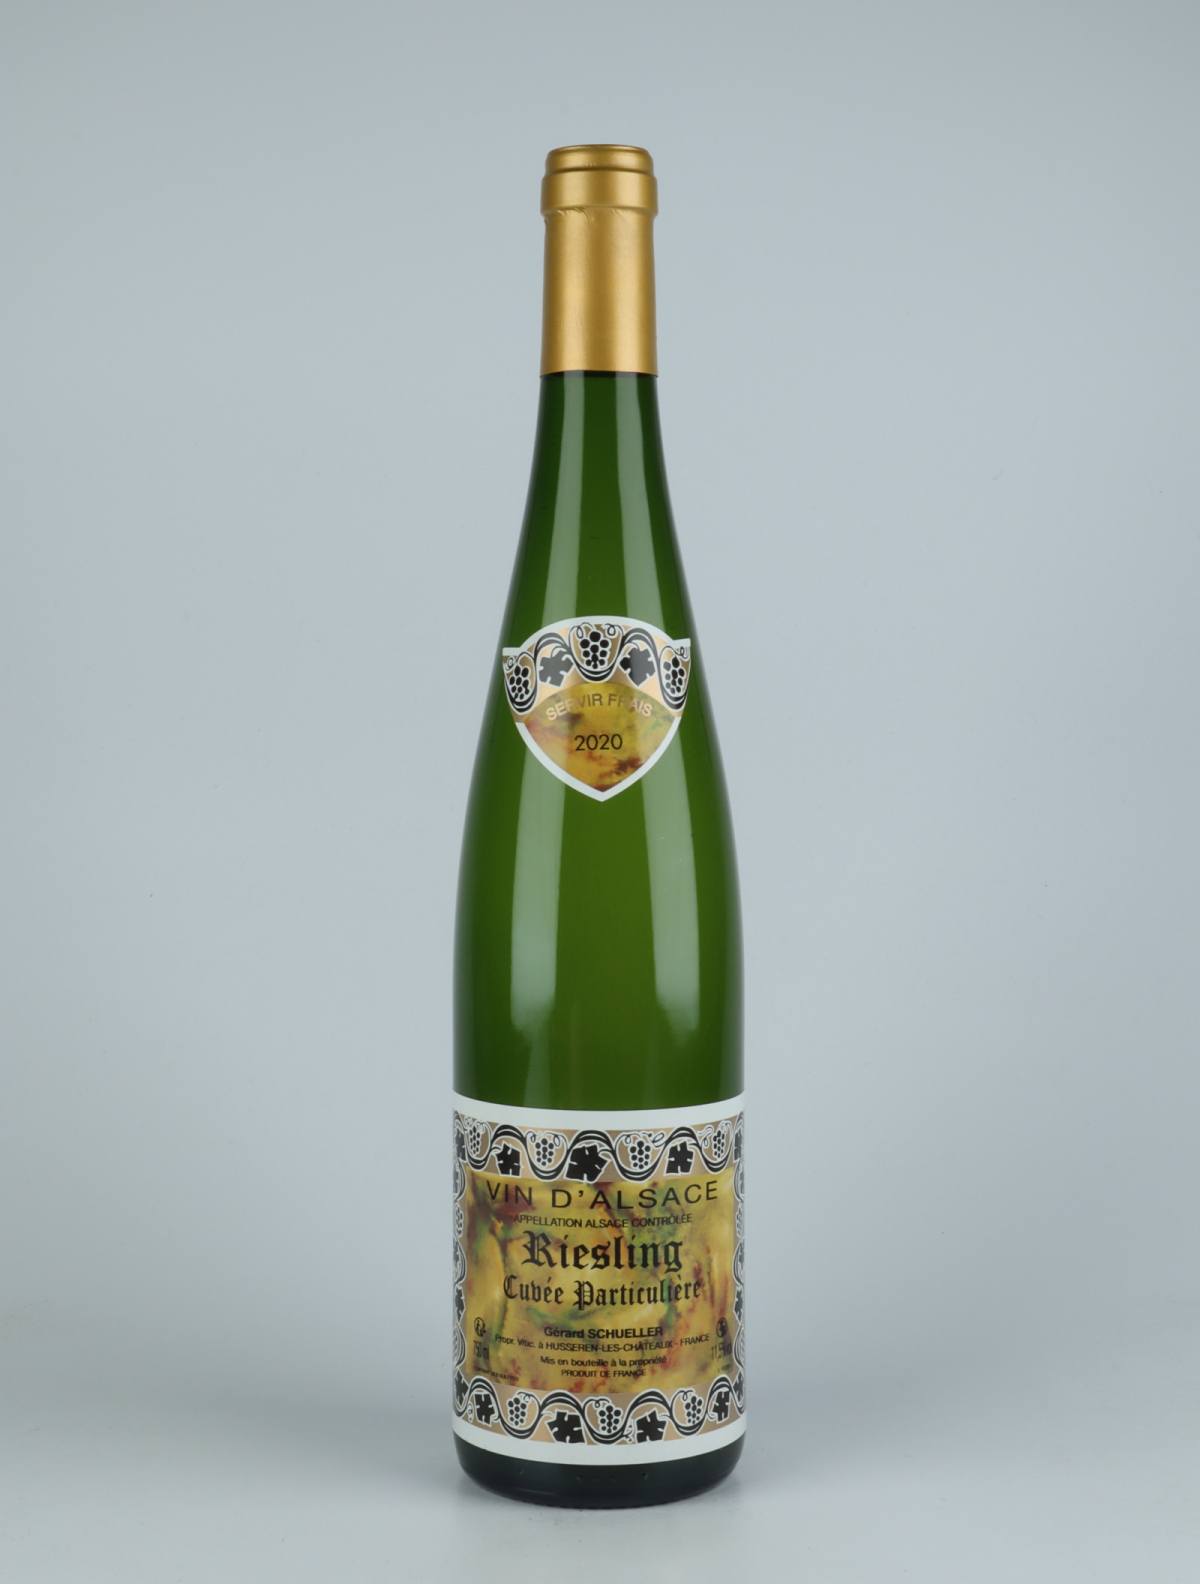 En flaske 2020 Riesling Cuvée Particulière Hvidvin fra Gérard Schueller, Alsace i Frankrig